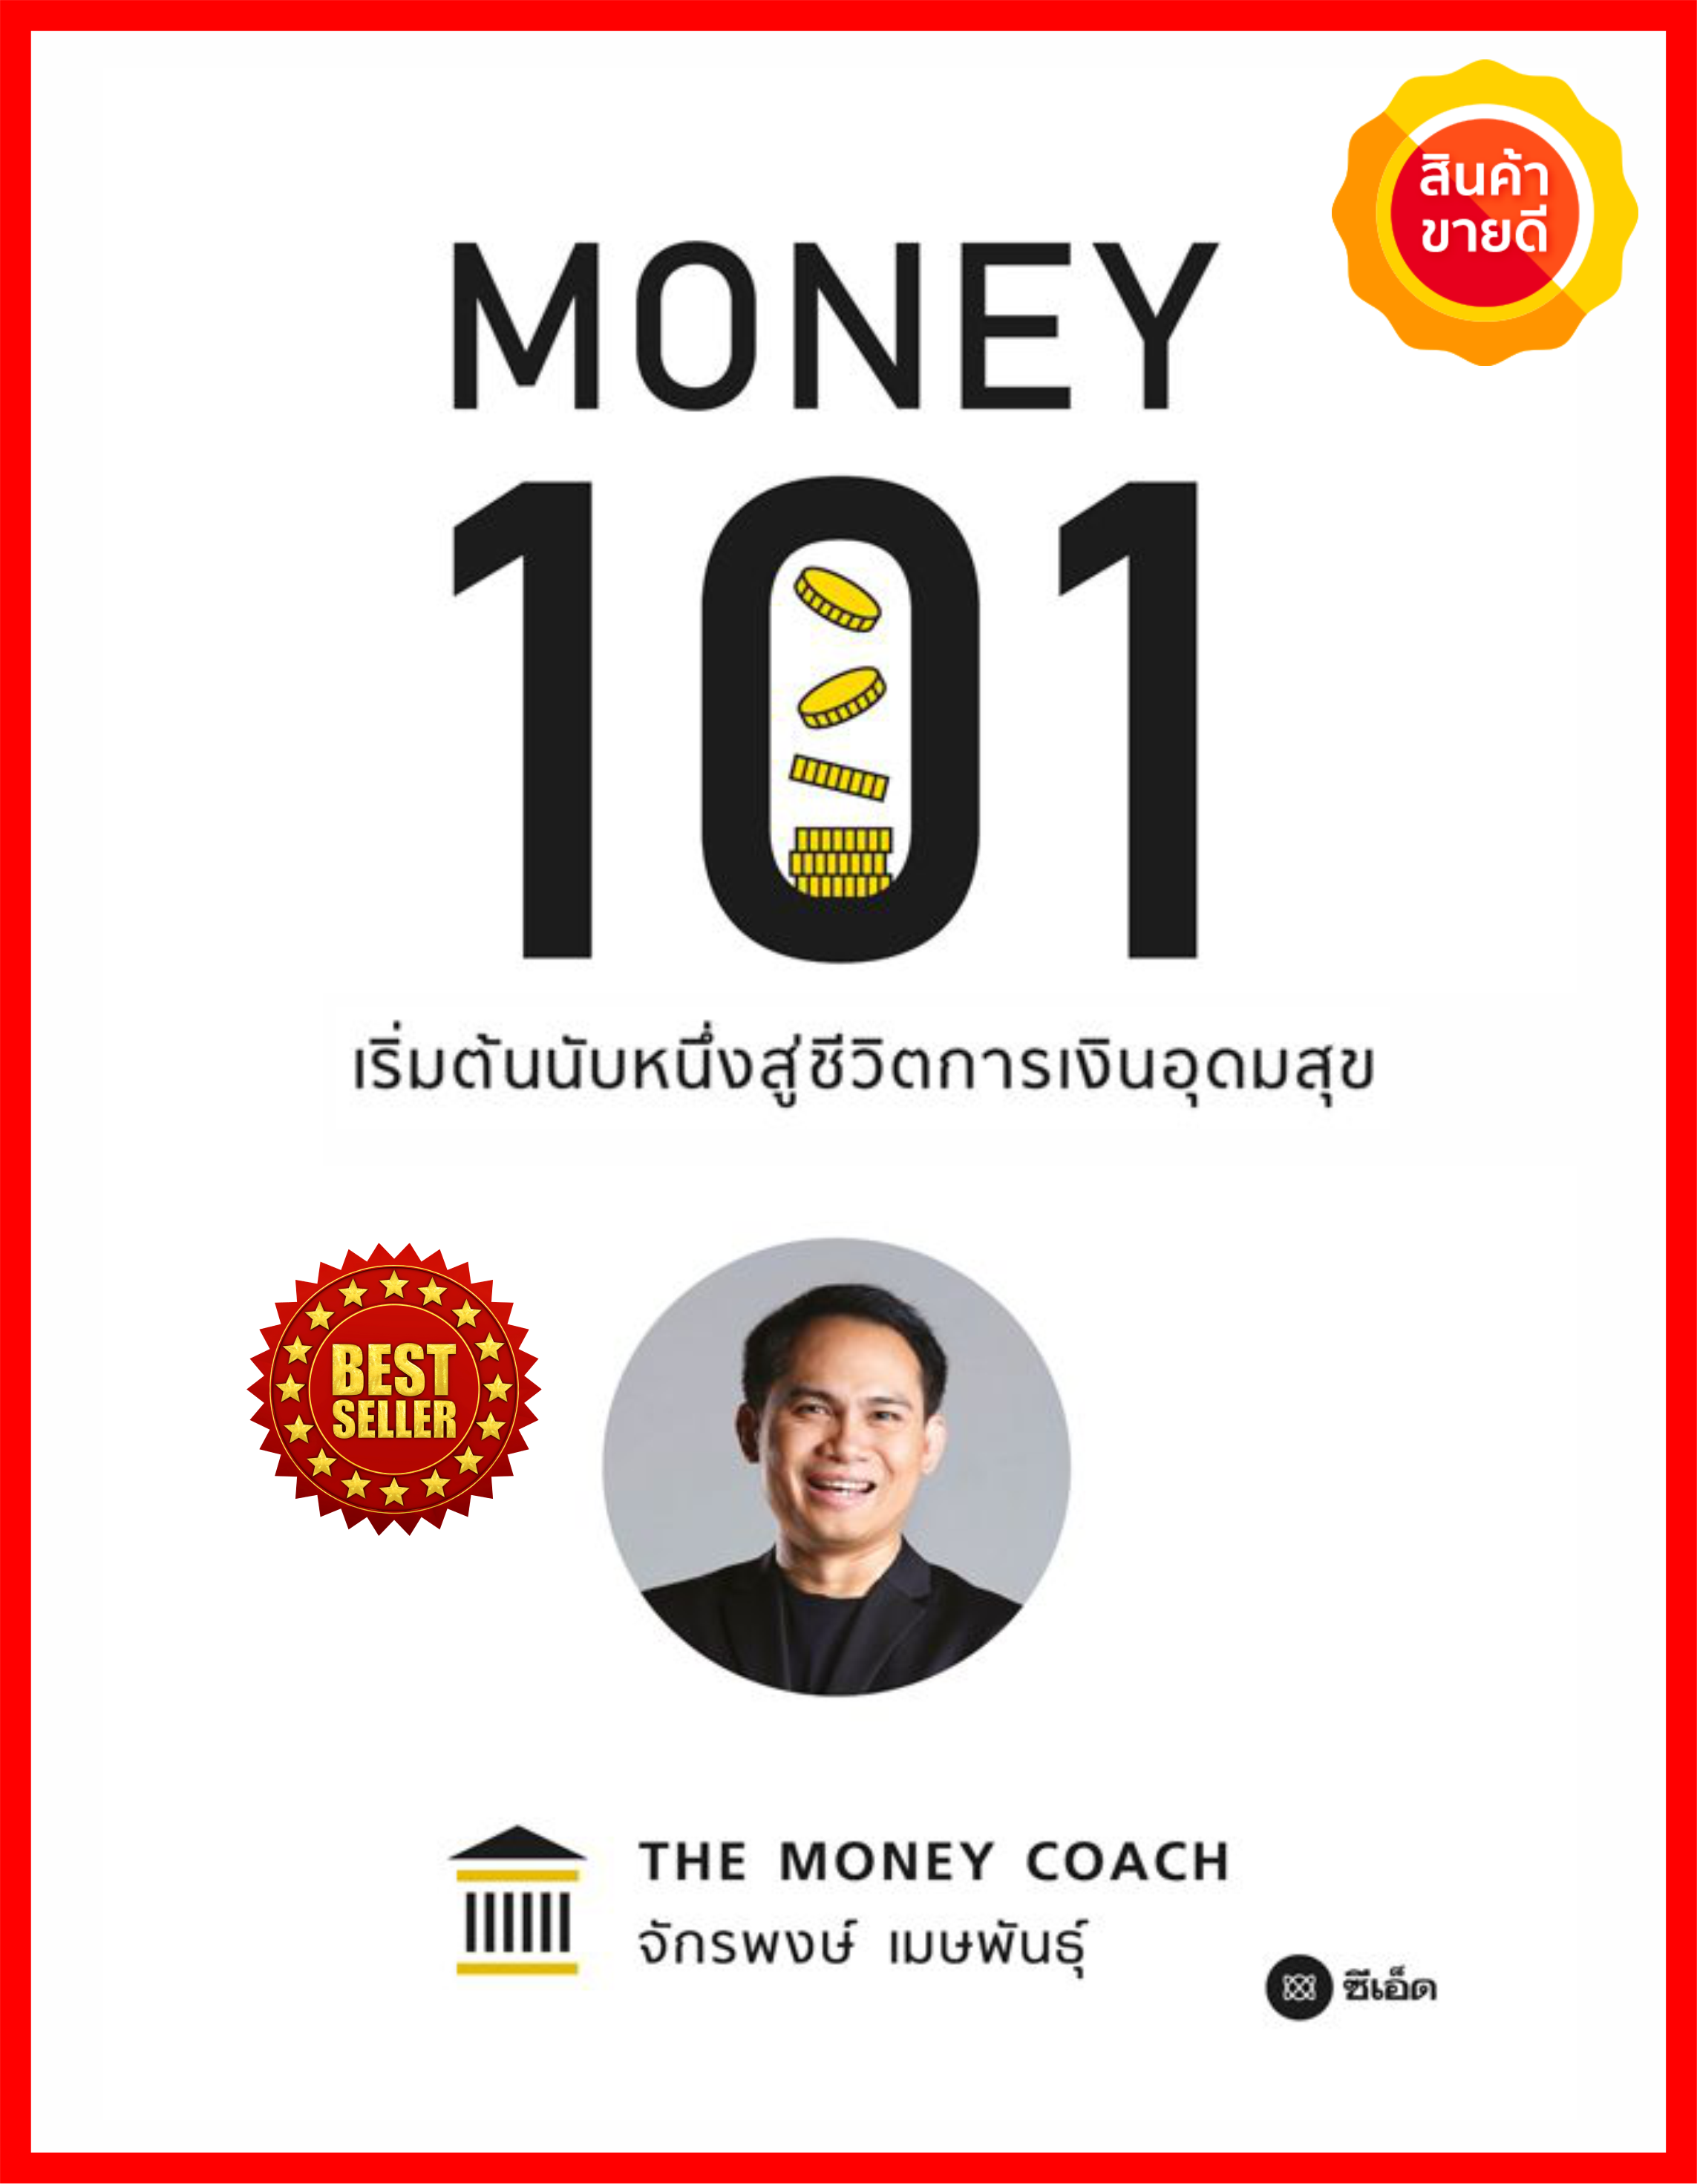 หนังสือ Money 101 เริ่มต้นนับหนึ่งสู่ชีวิตการเงินอุดมสุข คู่มือให้หลักคิด หลักปฏิบัติอย่างง่าย เน้นประเด็นสำคัญเรื่อง การเงินส่วนบุคคล